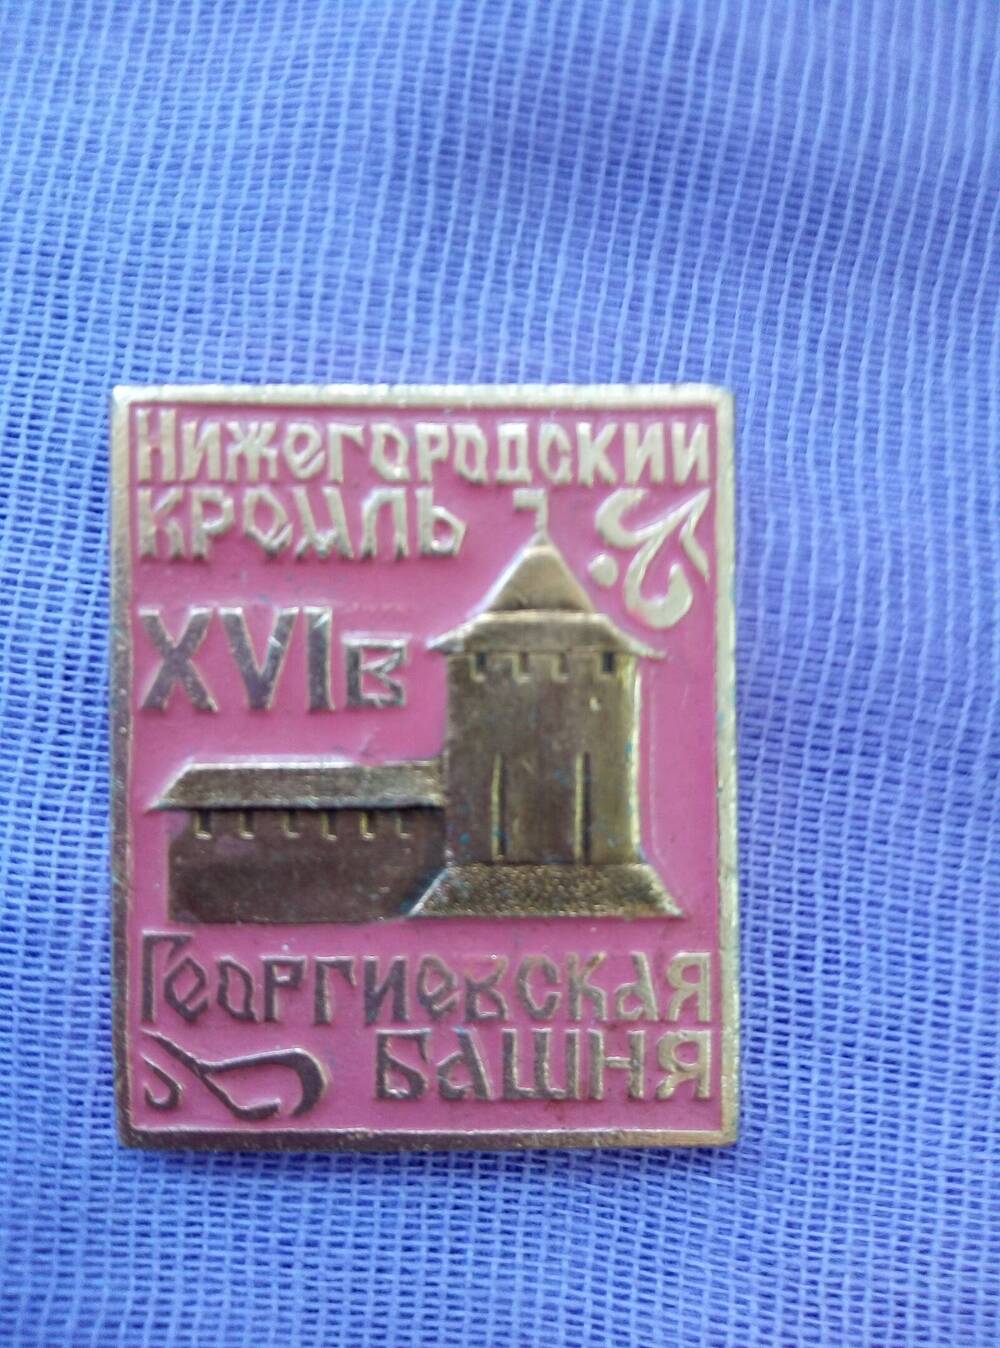 Значок «Нижегородский кремль – Георгиевская башня».